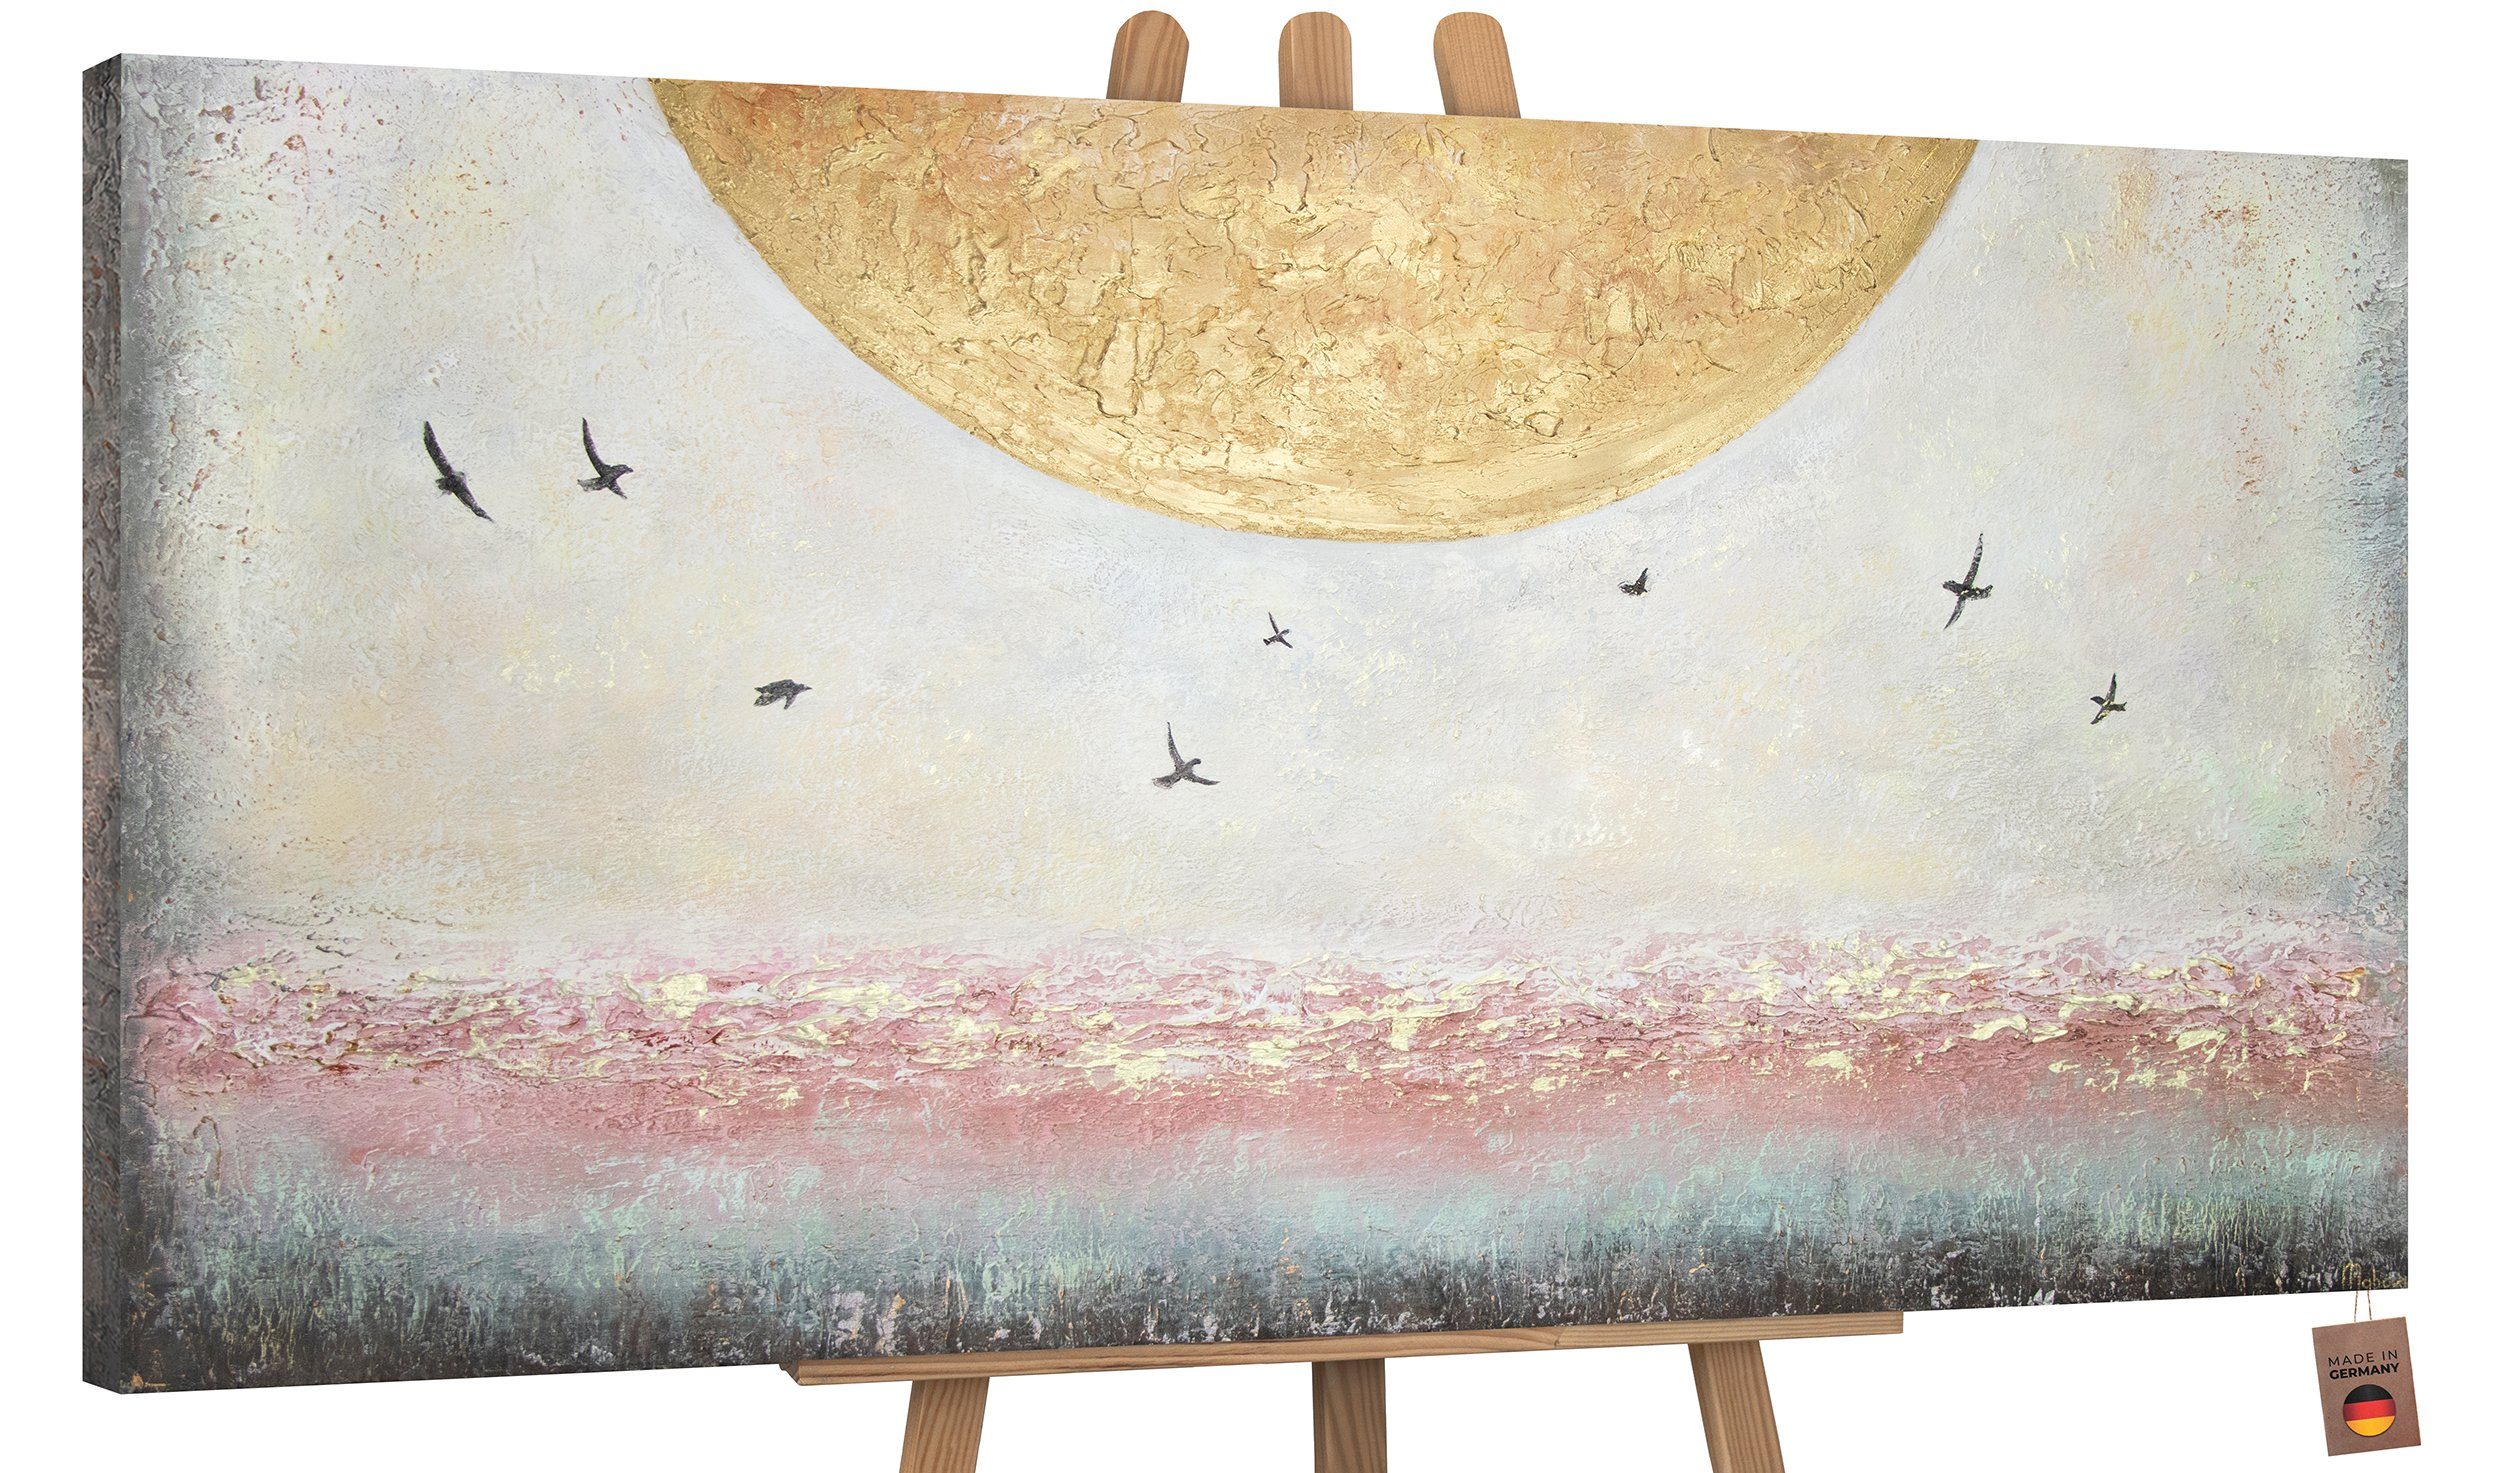 Vögel Leinwand Sonne YS-Art Ohne Handgemalt Bild Schattenfugenrahmen Sonnenenergie, Landschaft, Gemälde Gold Süden